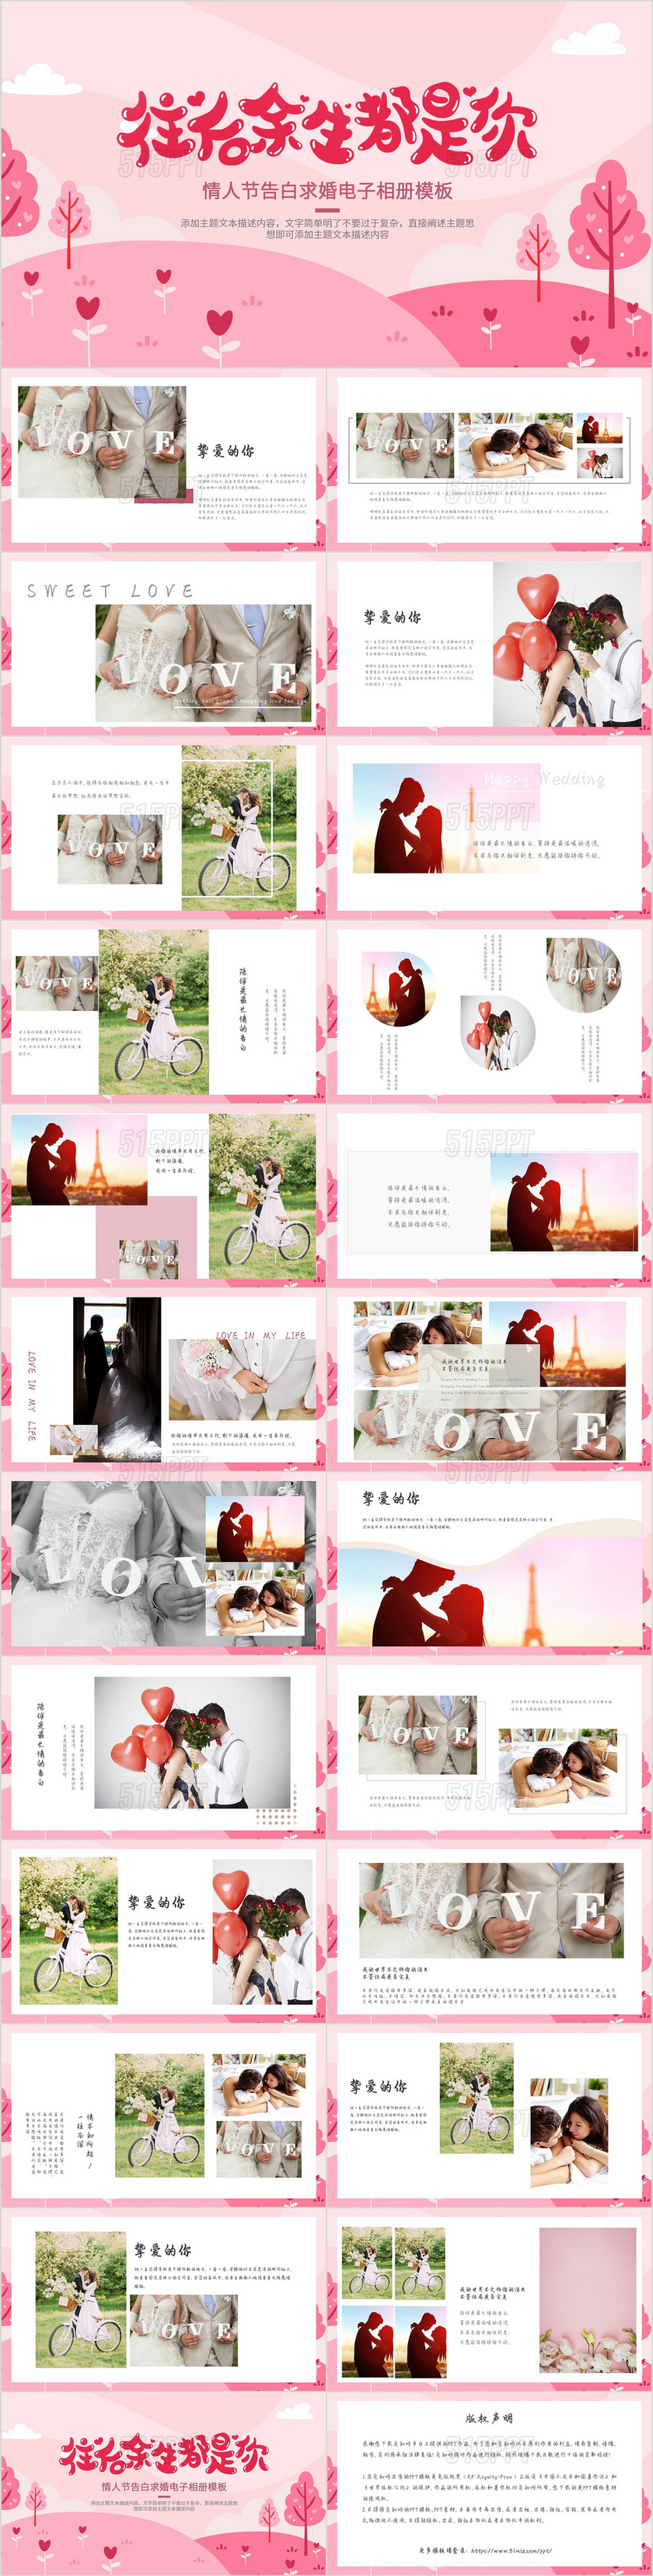 粉色浪漫爱情情人节相册纪念册PPT模板